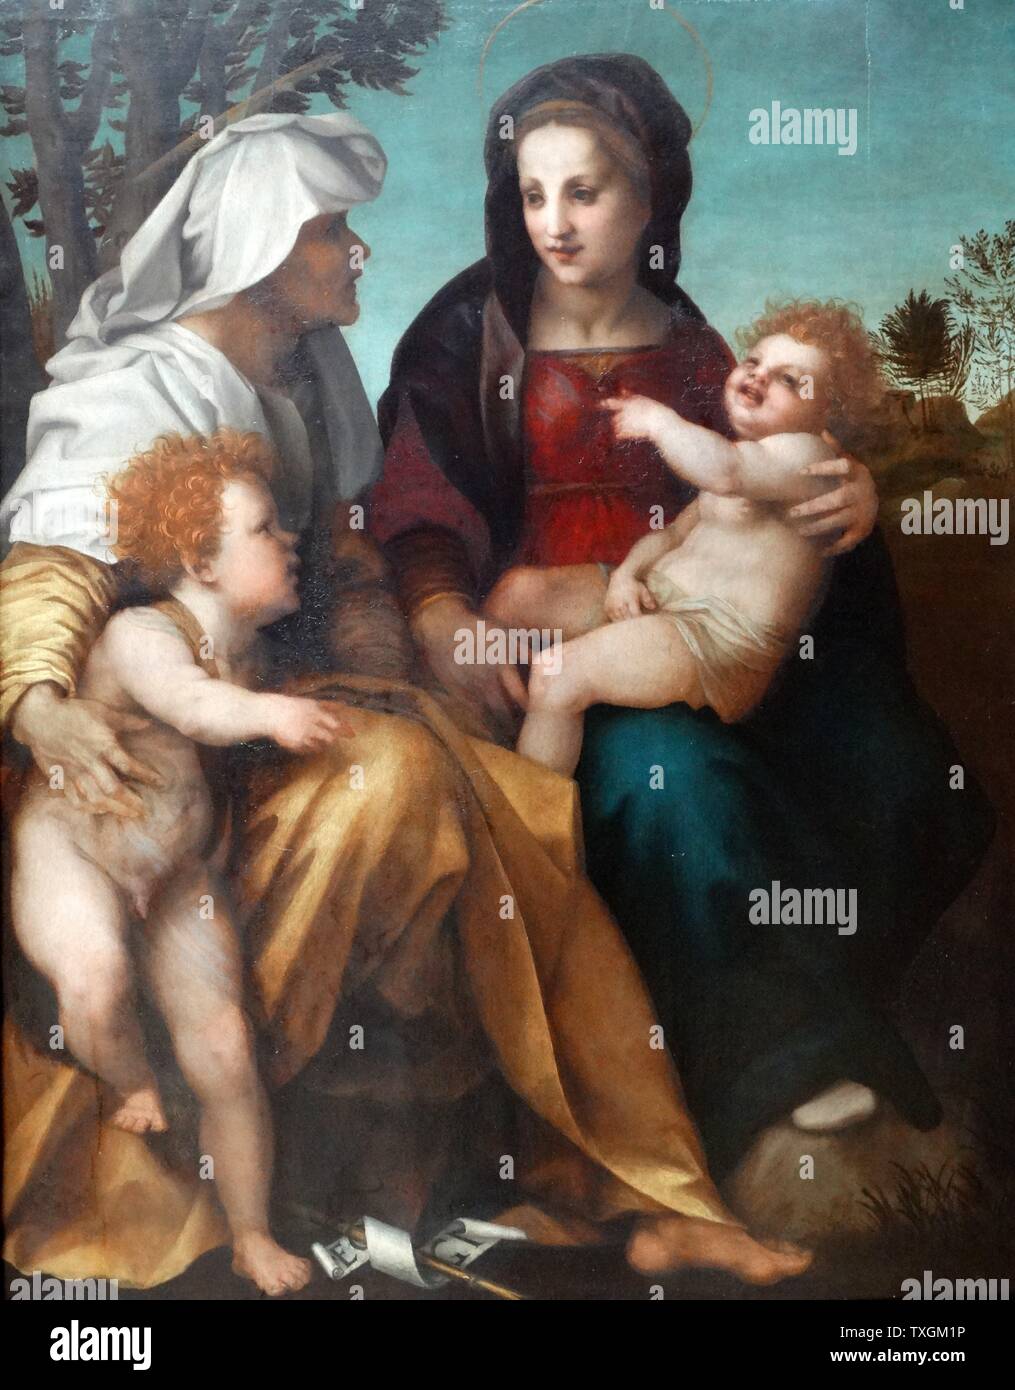 Gemälde mit dem Titel "Die Madonna und Kind, Saint Elizabeth und dem Täufer" von Andrea del Sarto (1486-1530) eines italienischen Malers von Florenz entfernt. Datiert aus dem 16. Jahrhundert Stockfoto